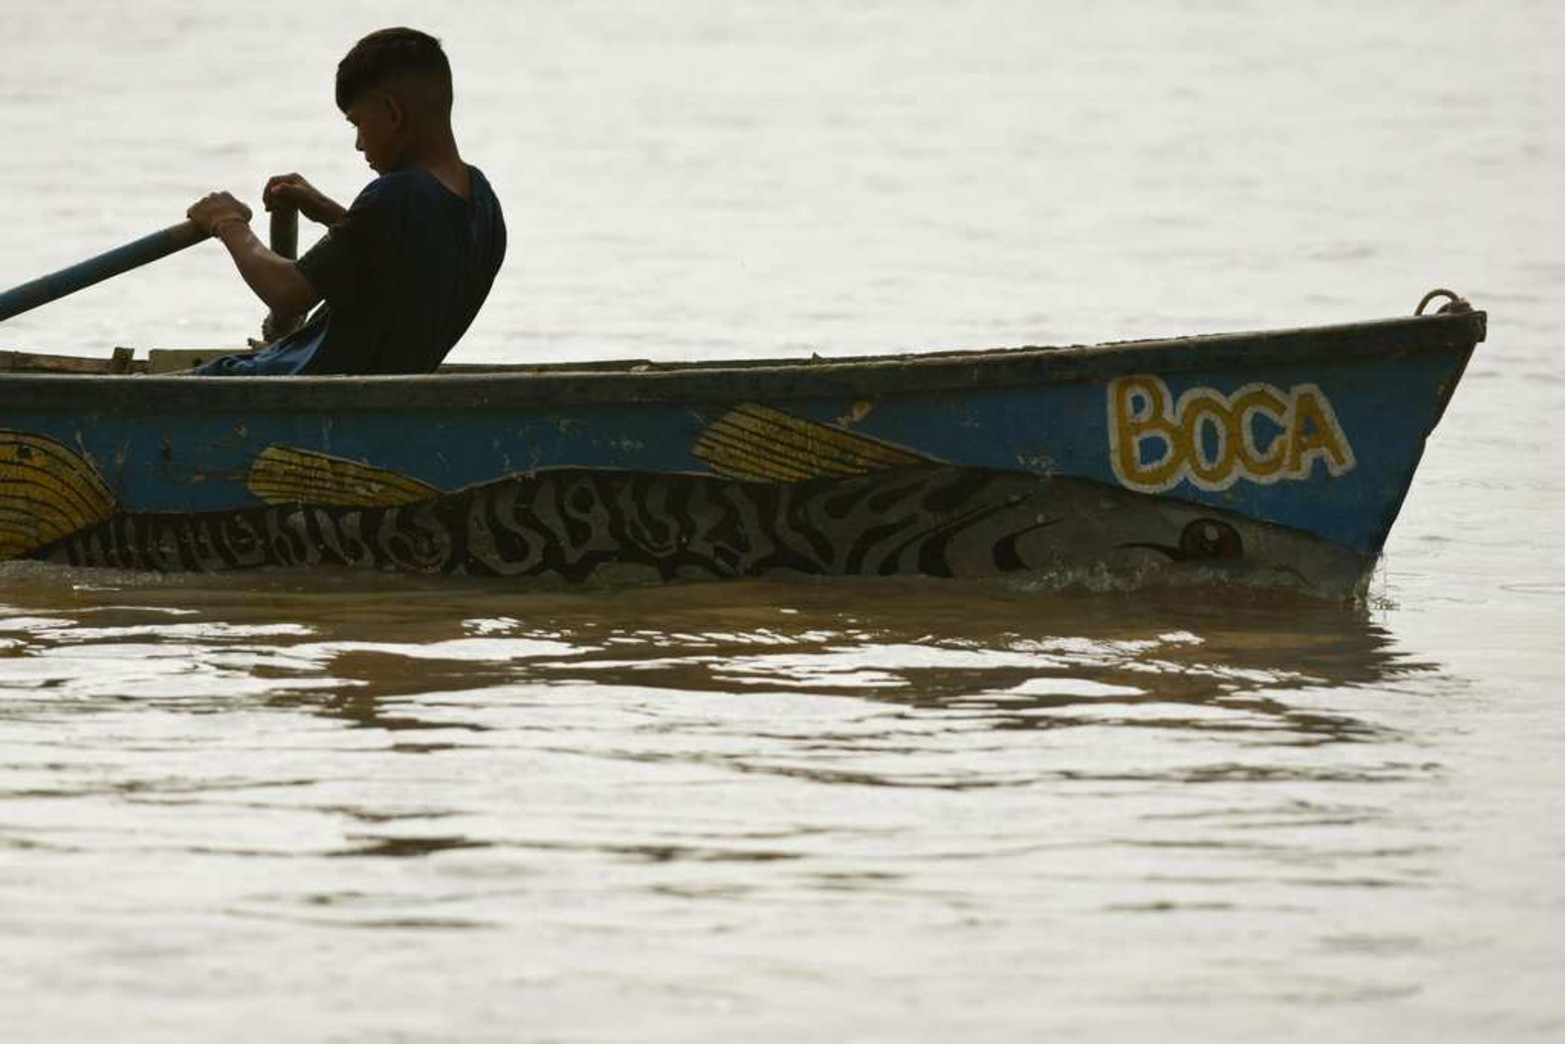 Juancito ya pesca solo. Con solo 13 años este niño ya aprendió el oficio y es mirado siempre desde la costa.